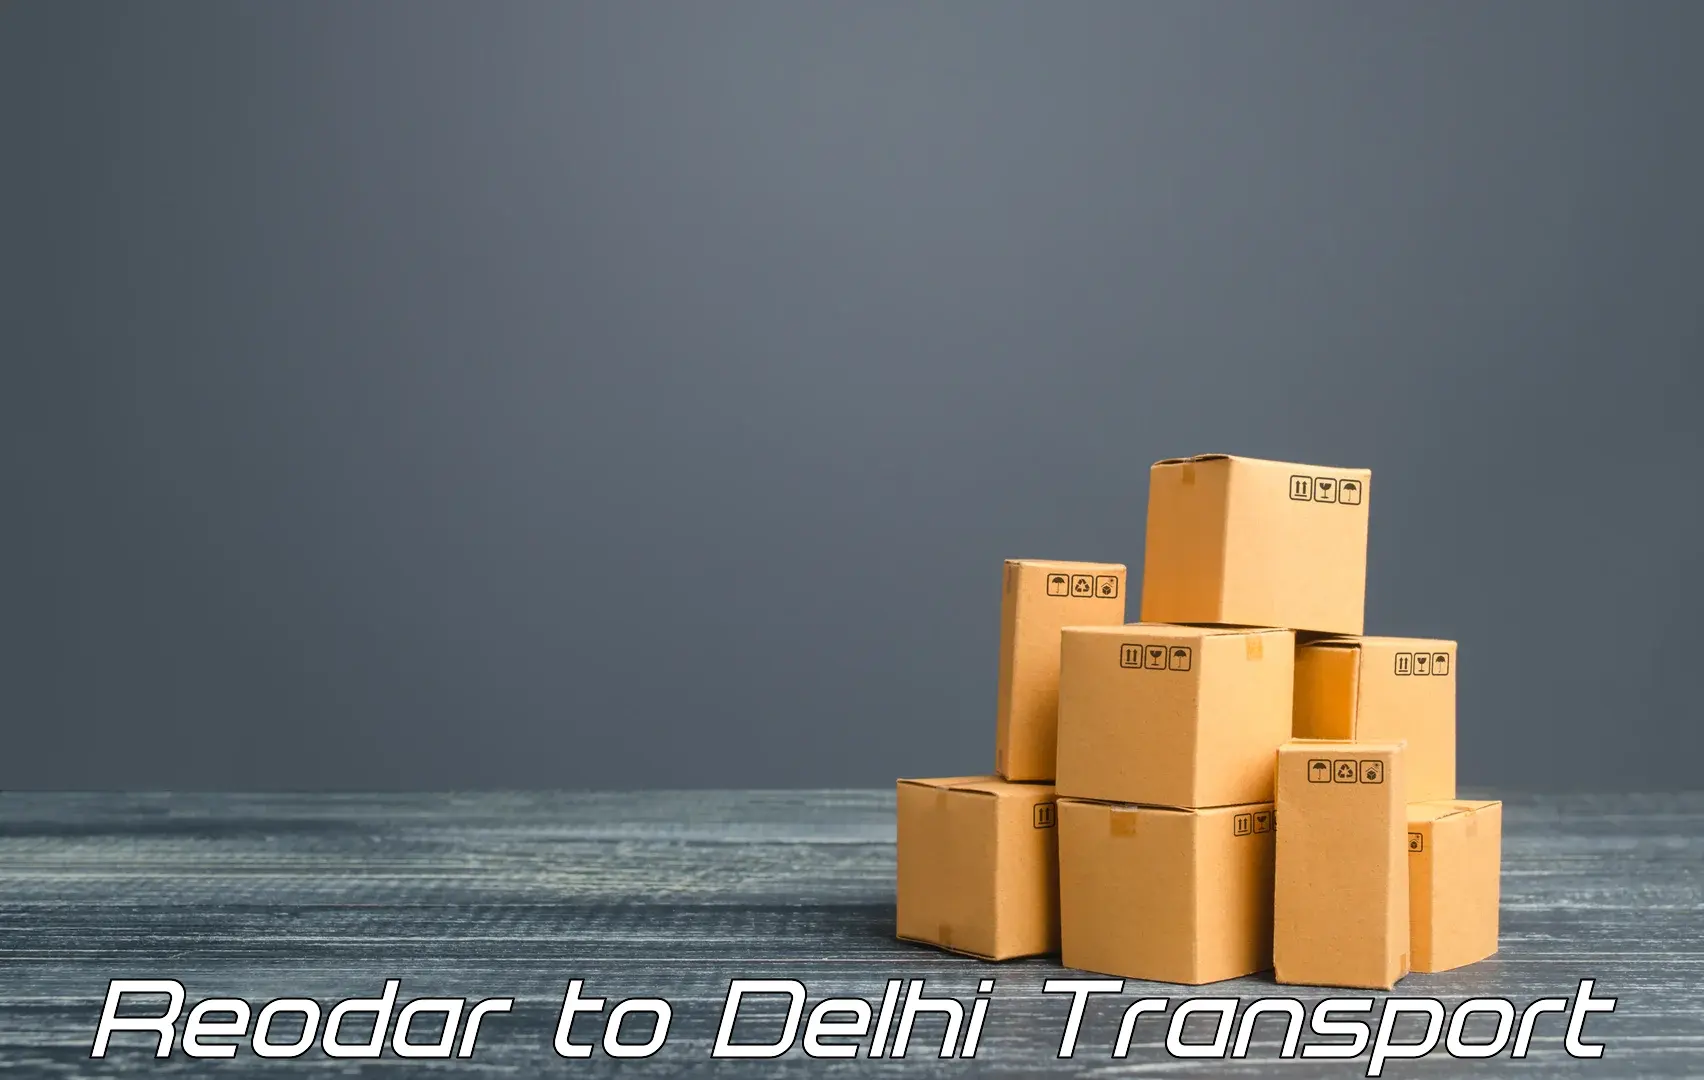 Transportation services Reodar to University of Delhi